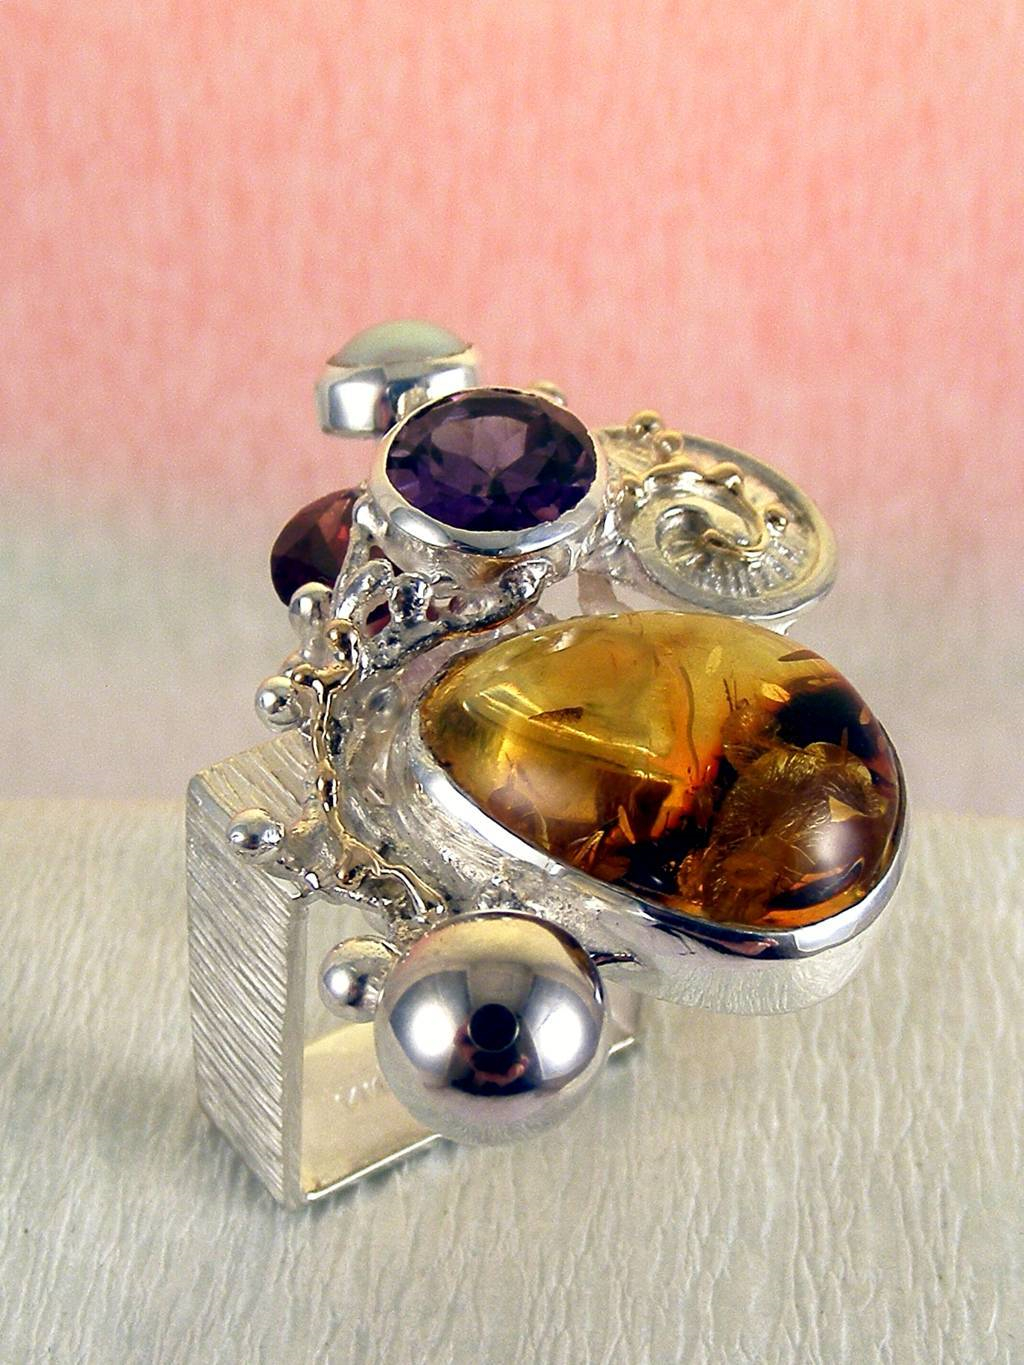 módní šperky, modní styl, sběratelská položka, šperky vyrobené ze stříbra a zlata, jantar, ametyst, granát, perla, Gregory Pyra Piro kvadrátový prstýnek čís. 1710